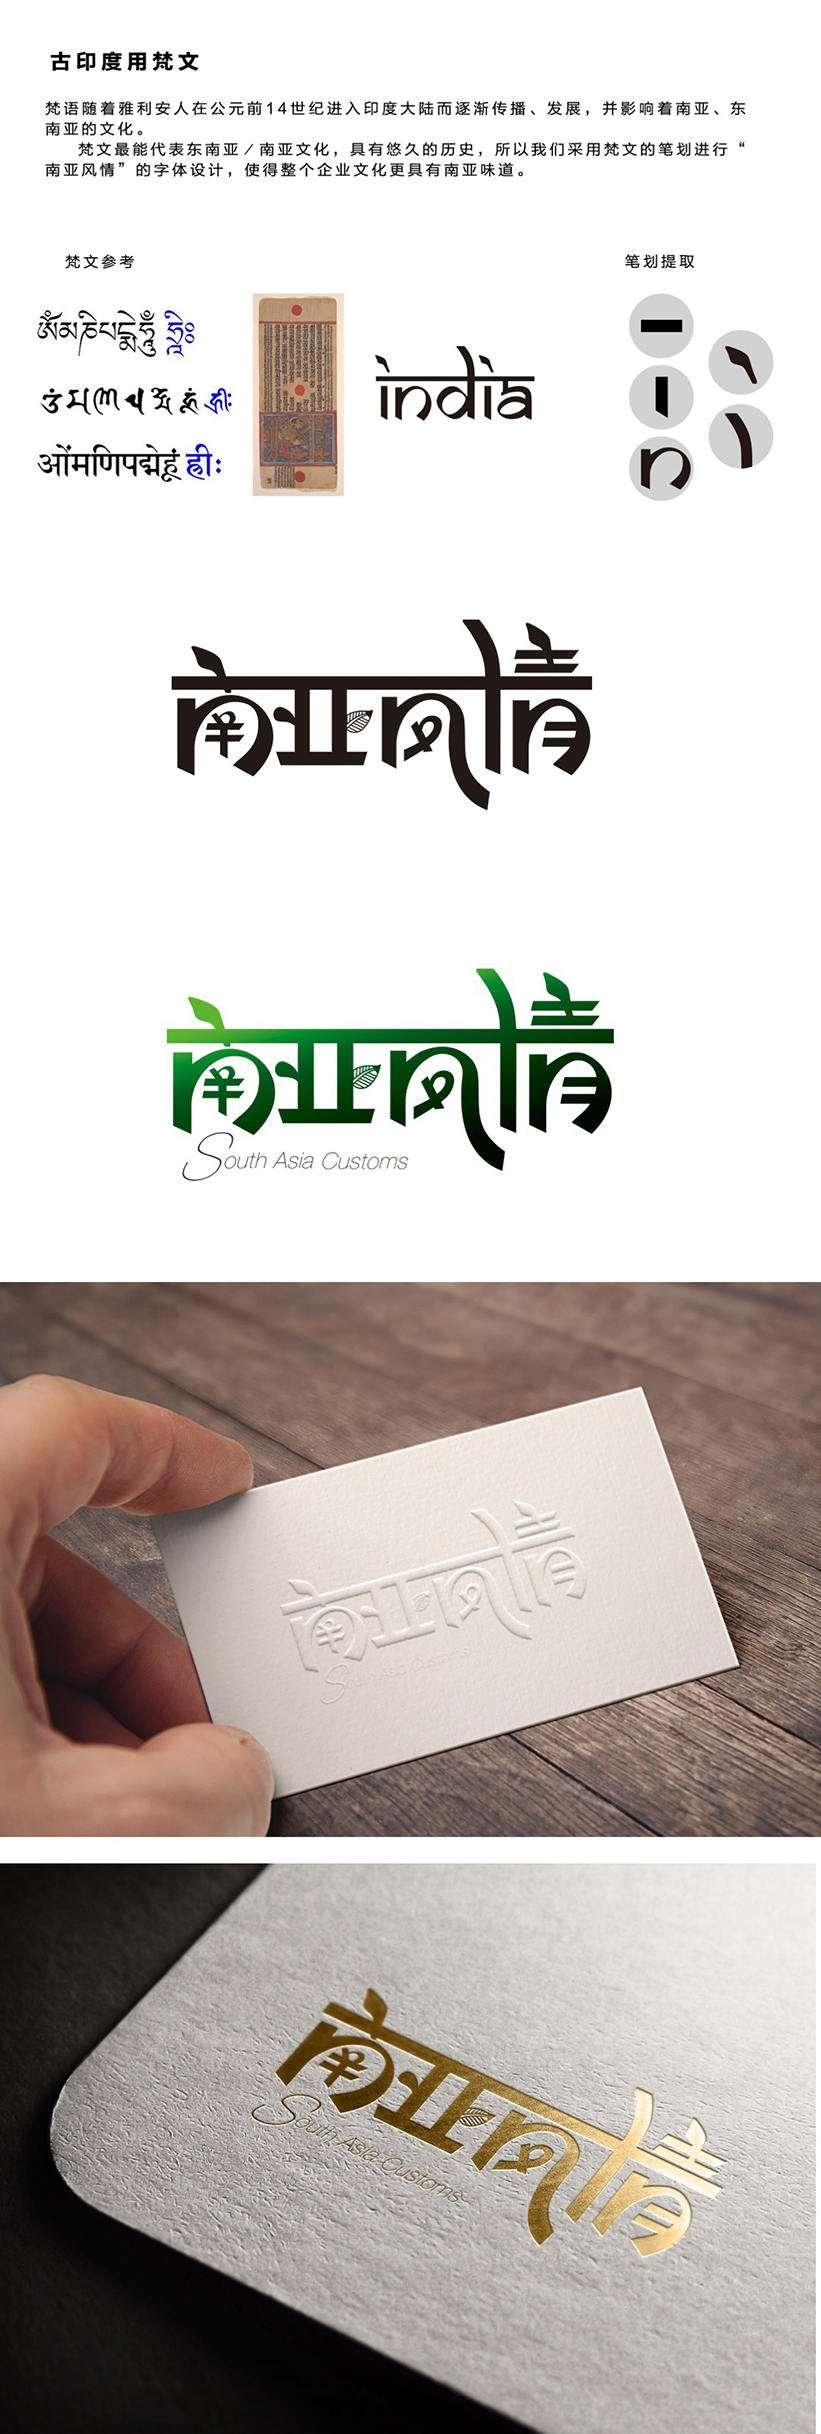 南亚风情饮品logo设计及包装设计